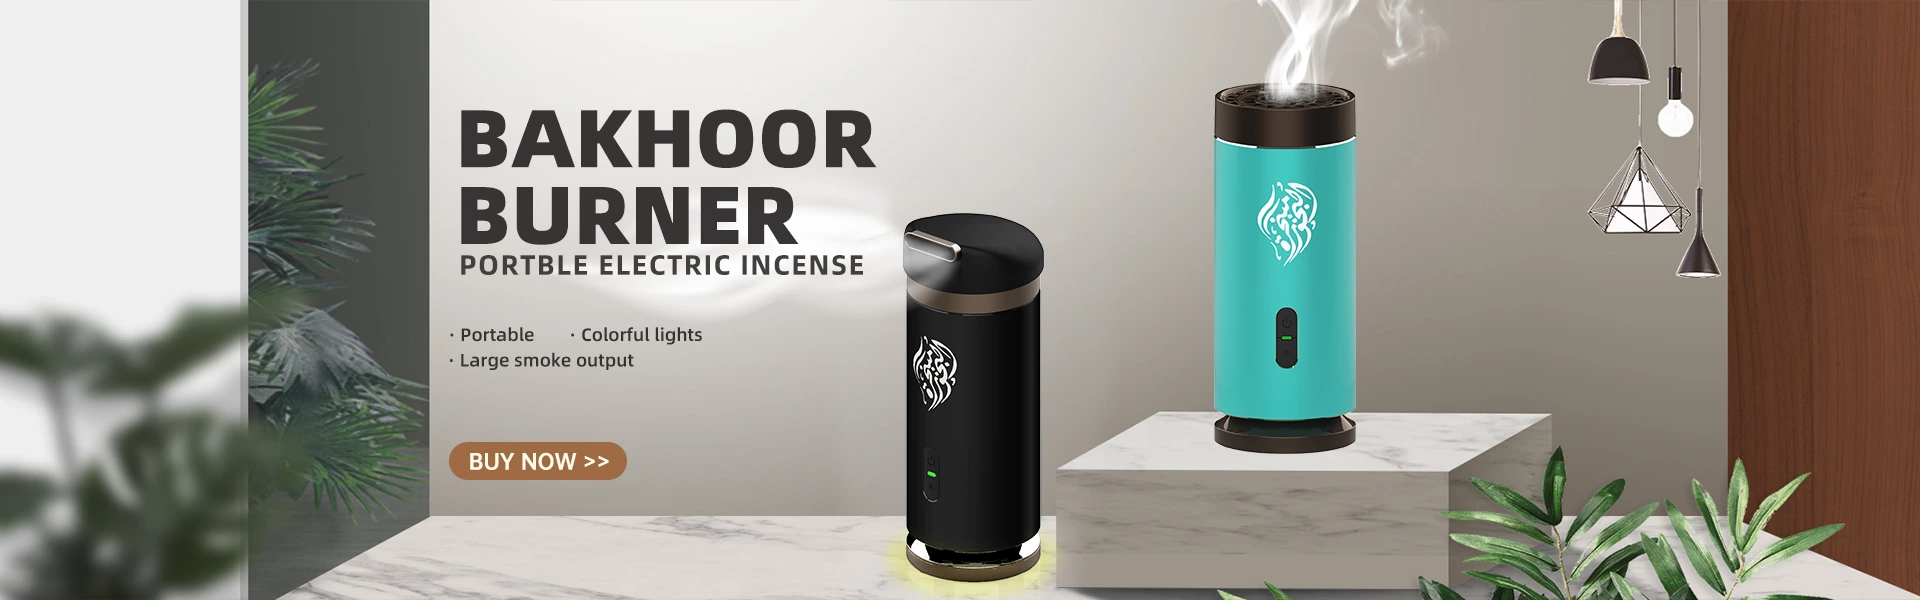 Bakhoor Burner portable electric Incense